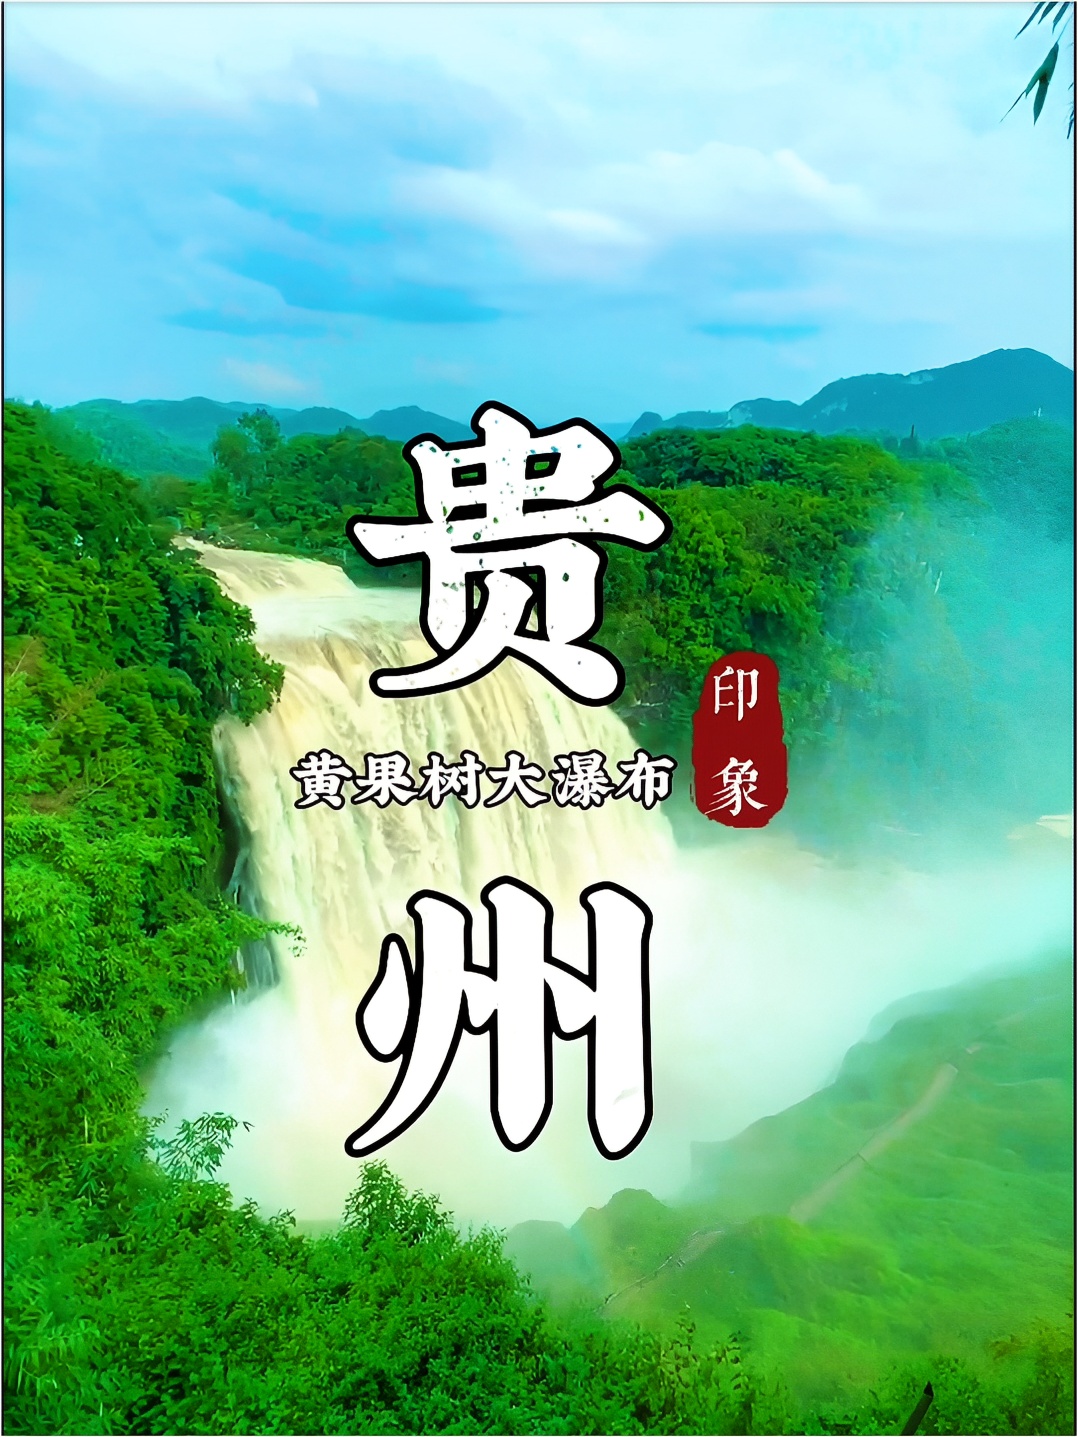 #玩转户外 黄果树瀑布被中国，国家地理评为中国最美六大瀑布之一。#小众发现社